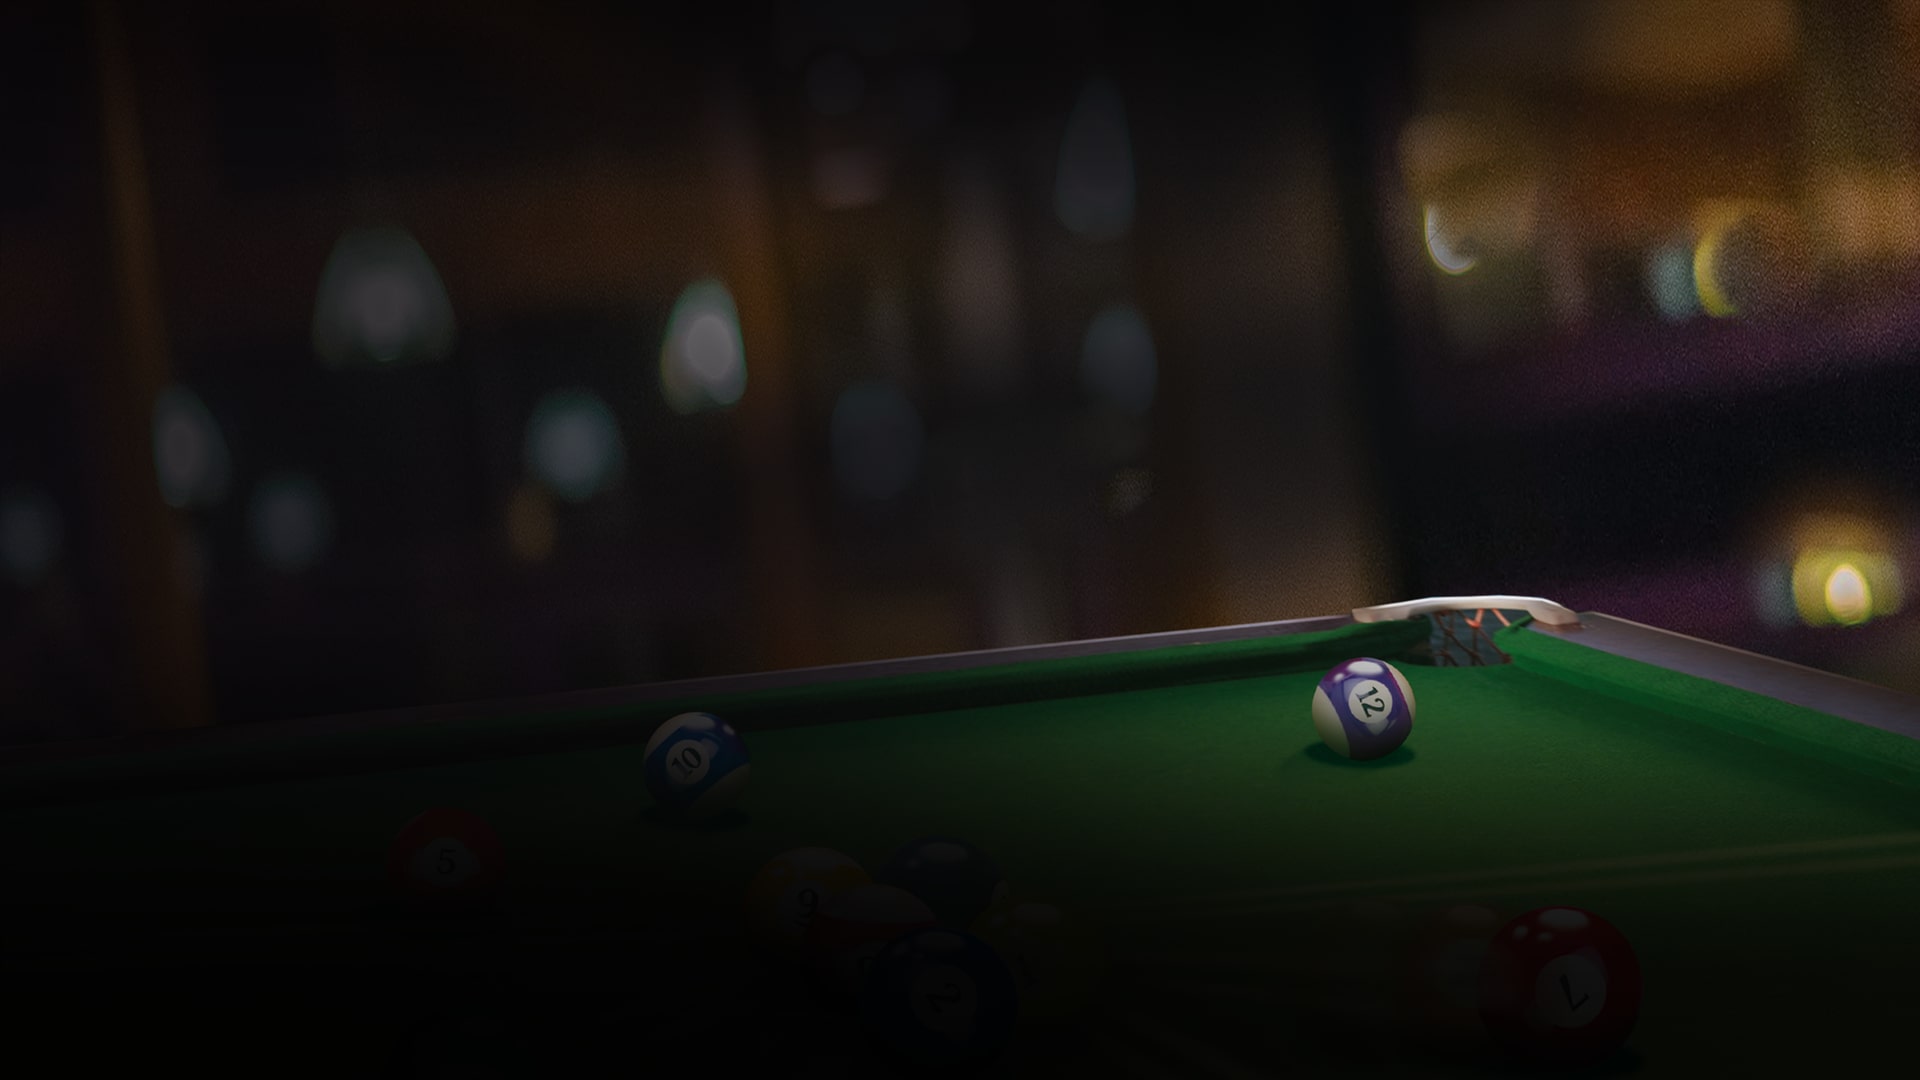 Jogo PS5 Sinuca 3d Billiards Pool Snooker Fisico Lacrado em Promoção na  Americanas